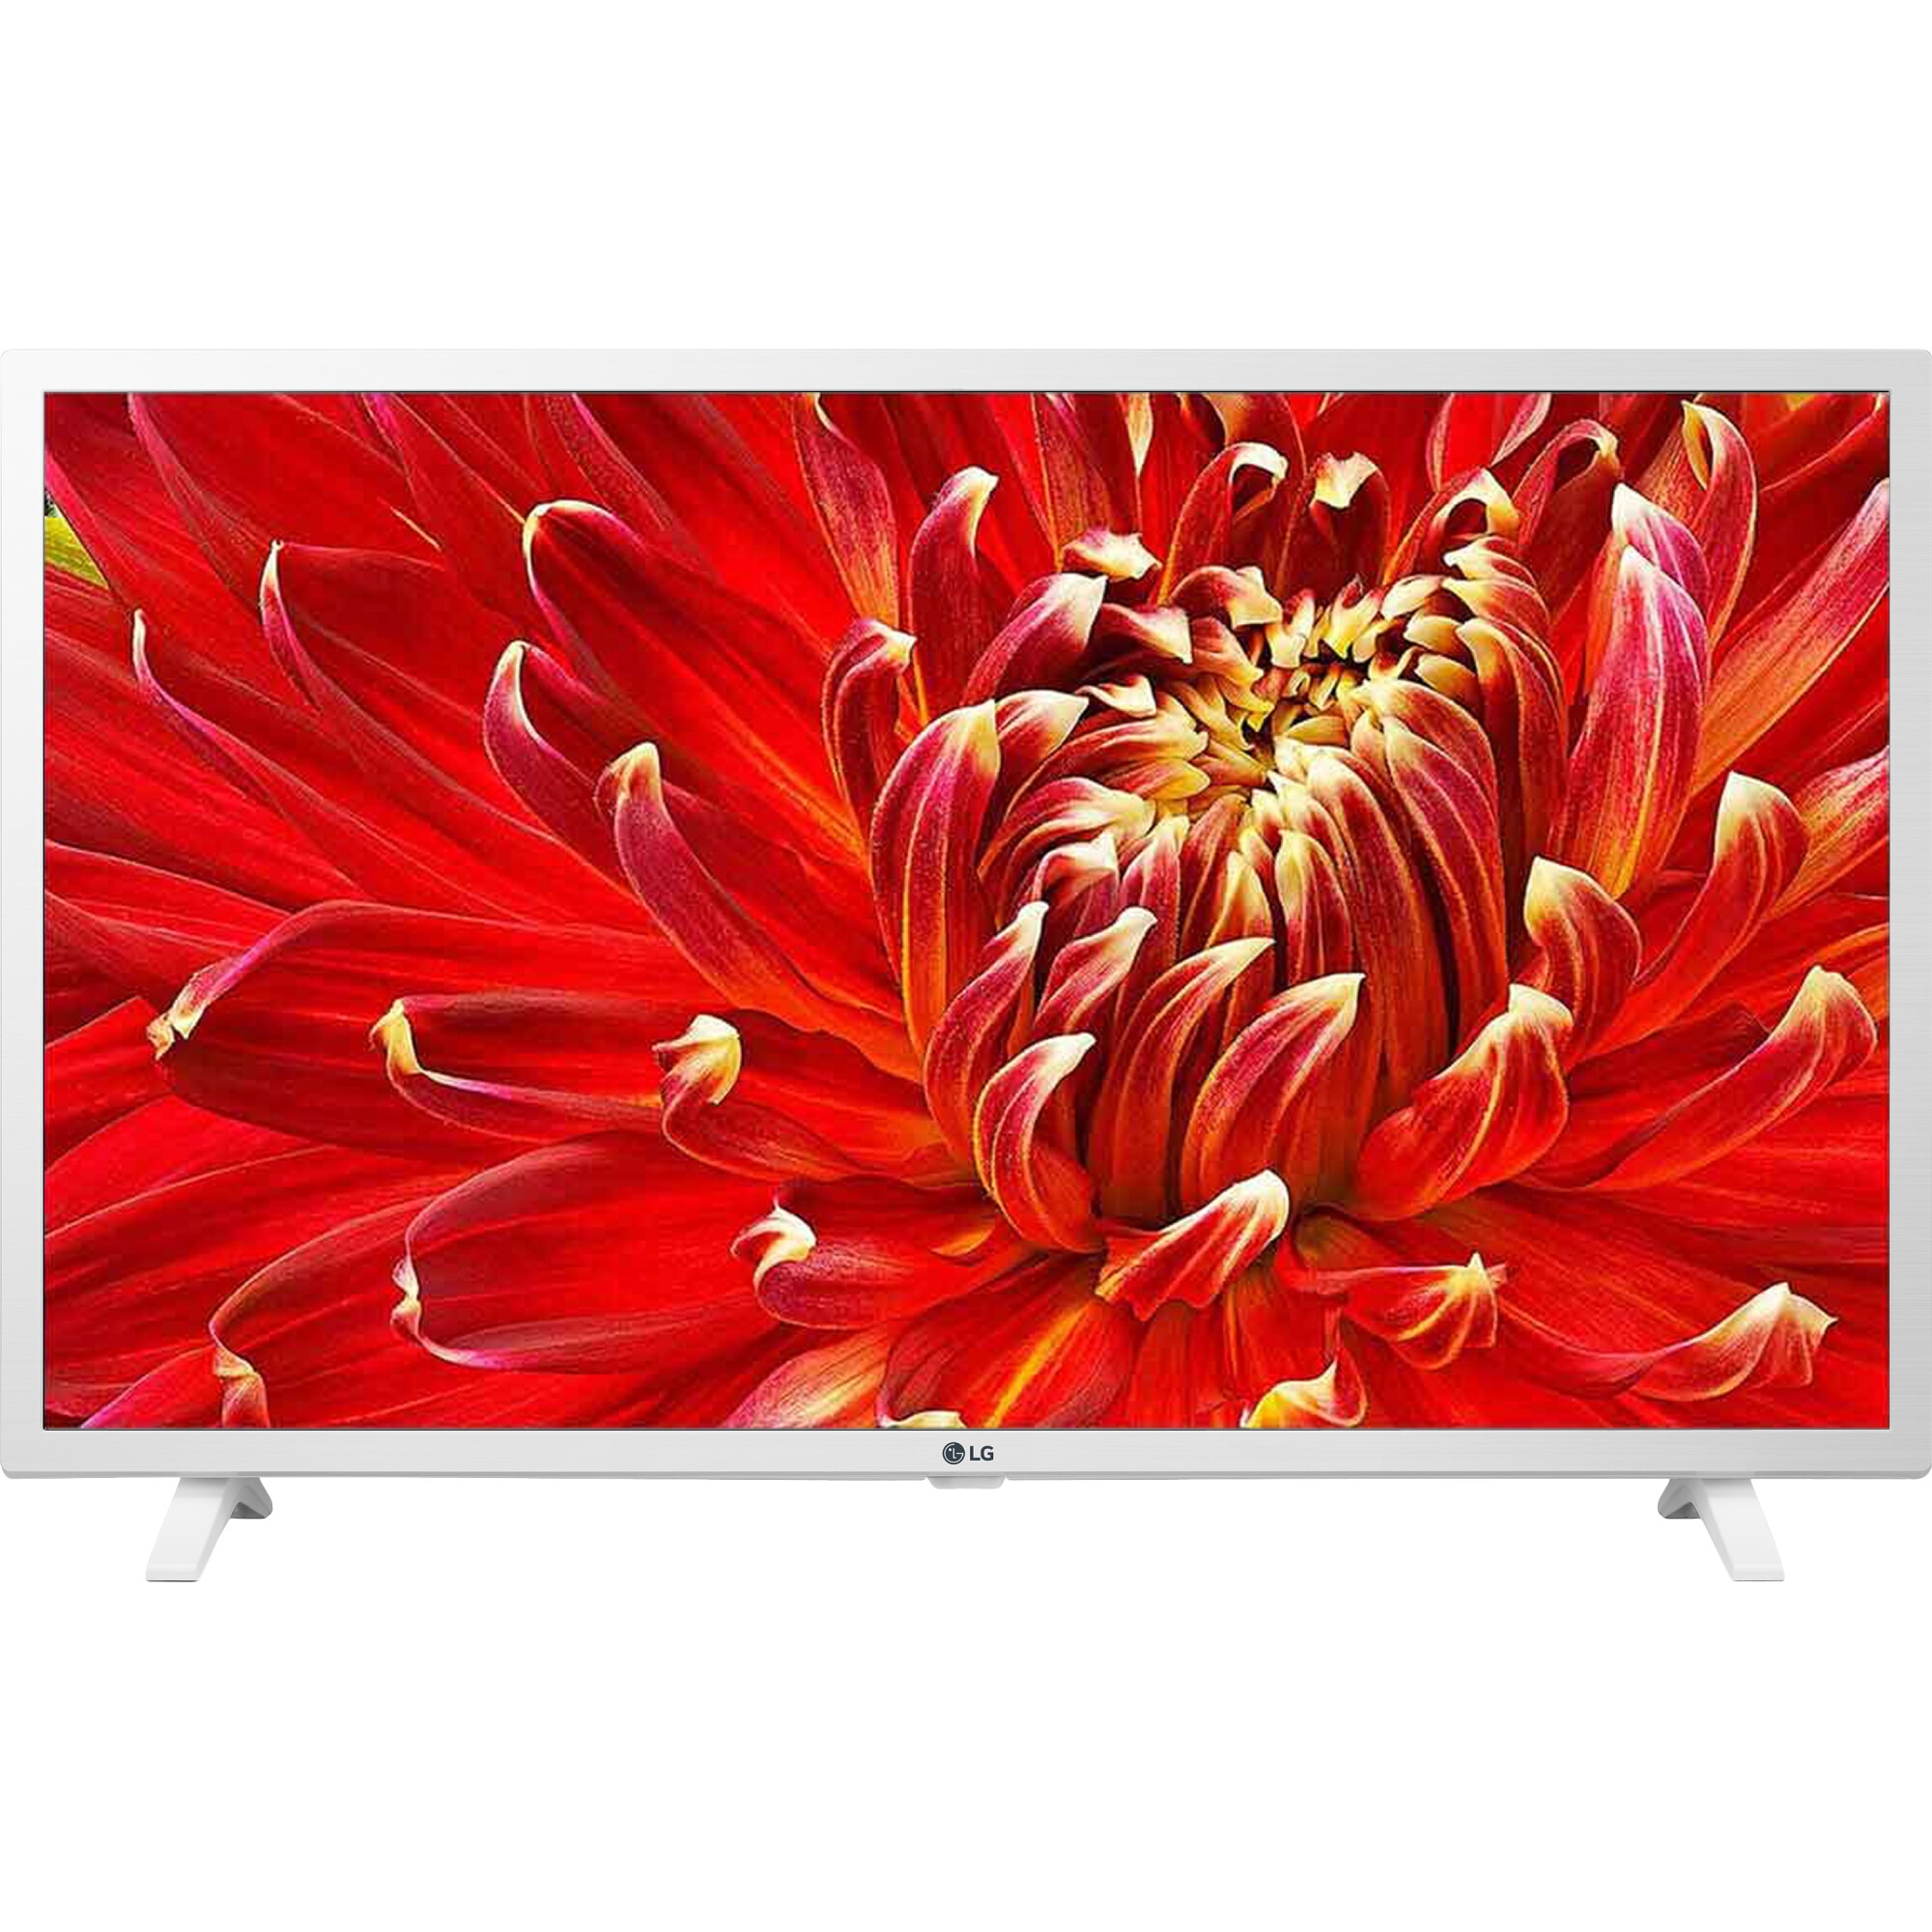 Телевизоры смарт купить дешево. Телевизор LG 32lm6350. Телевизор LG 32lm6350 32" (2019). Телевизор LG 32lm6380plc. Телевизор LG 32lm6390 32" (2019).